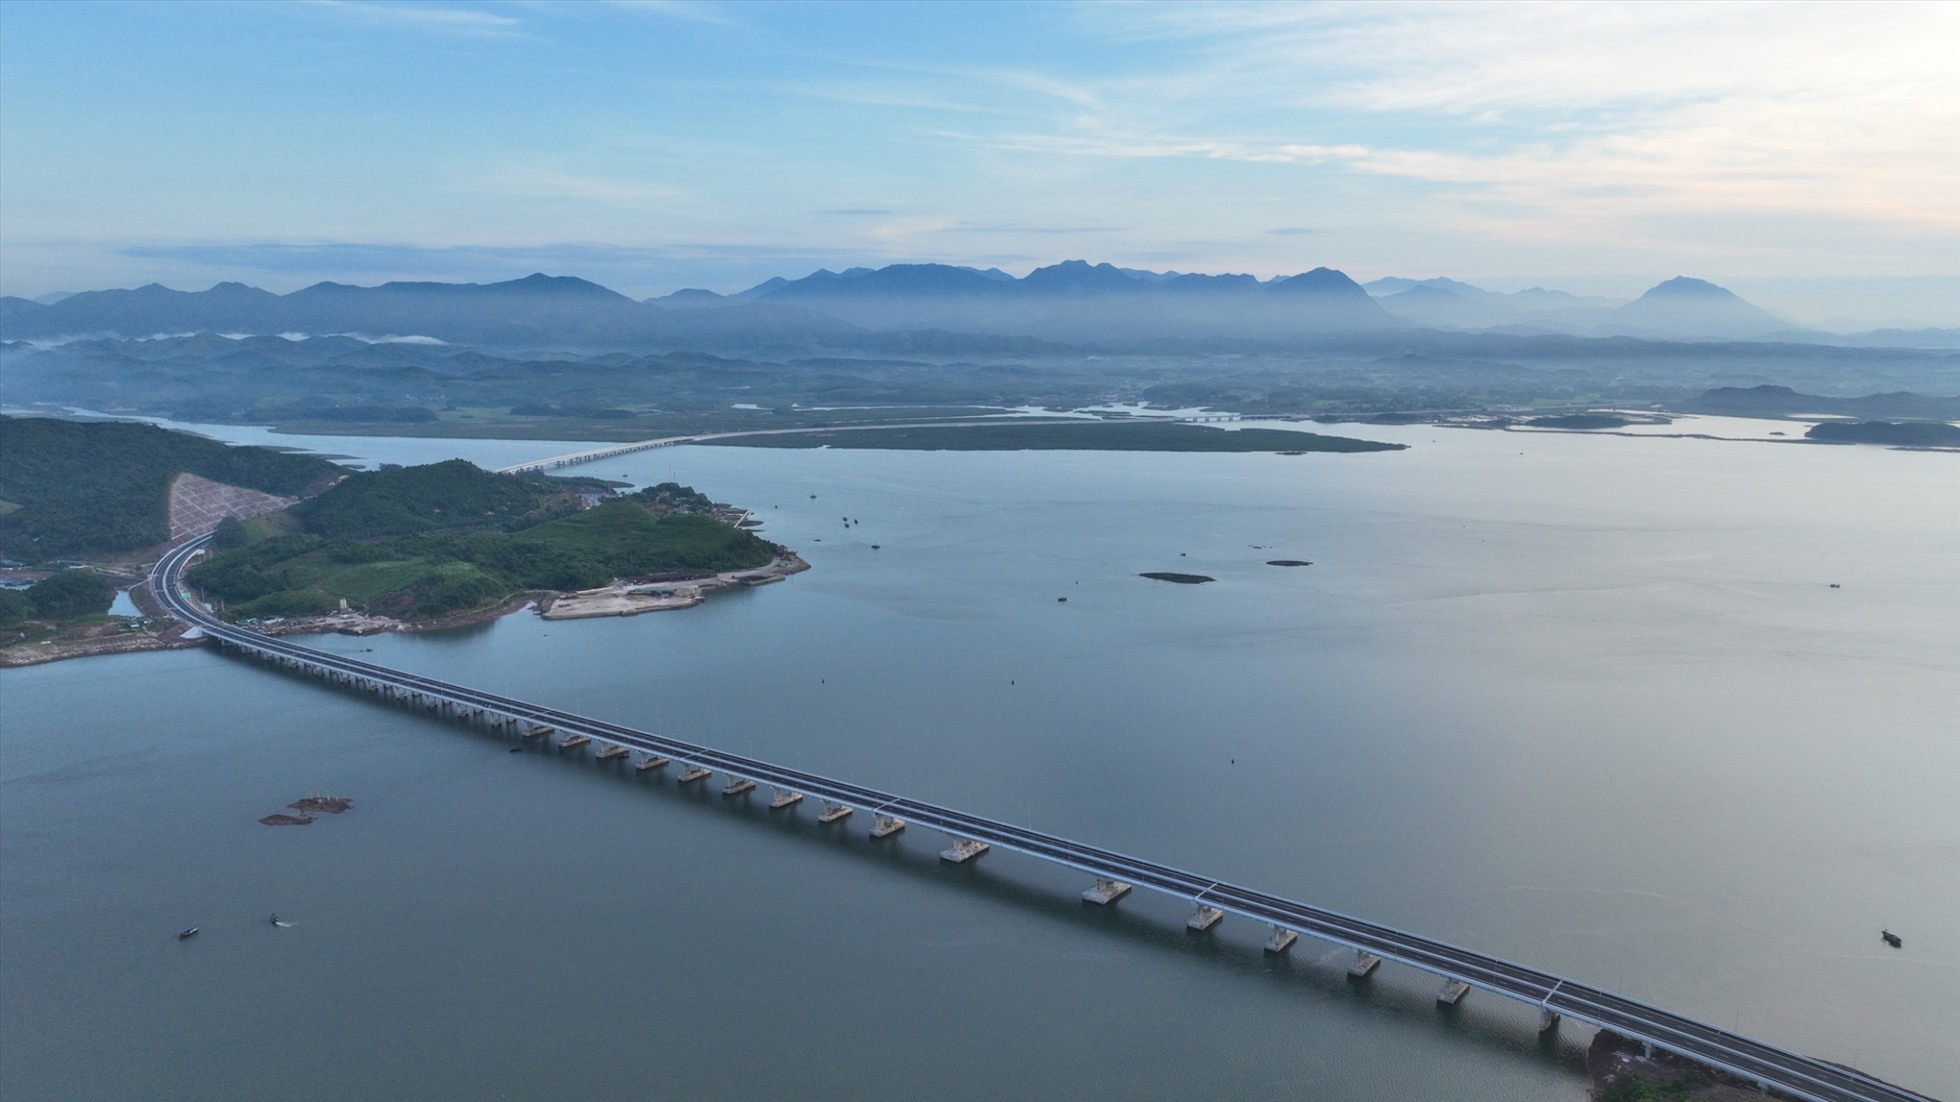 Cao tốc Vân Đồn – Móng Cái là một trong những cao tốc sở hữu nhiều cây cầu vượt biển, vượt sông suối với 32 cây cầu trên tuyến chính, với tổng chiều dài là hơn 7,9km (chiếm 10% tổng chiều dài tuyến). Ảnh: CTV